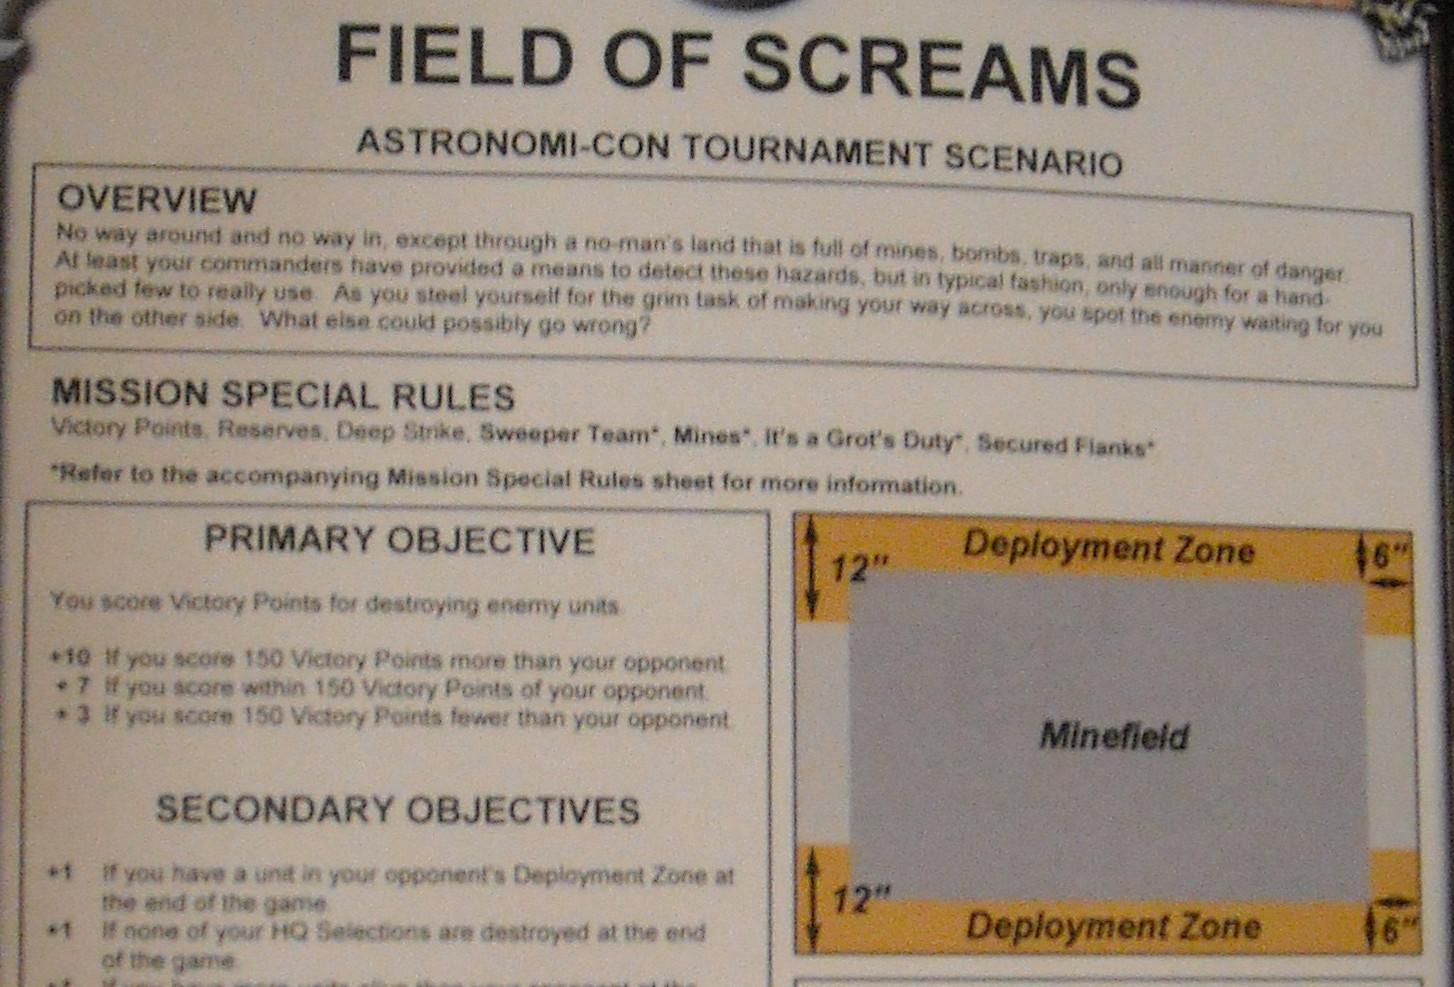 Scenario, Field of Screams scenario